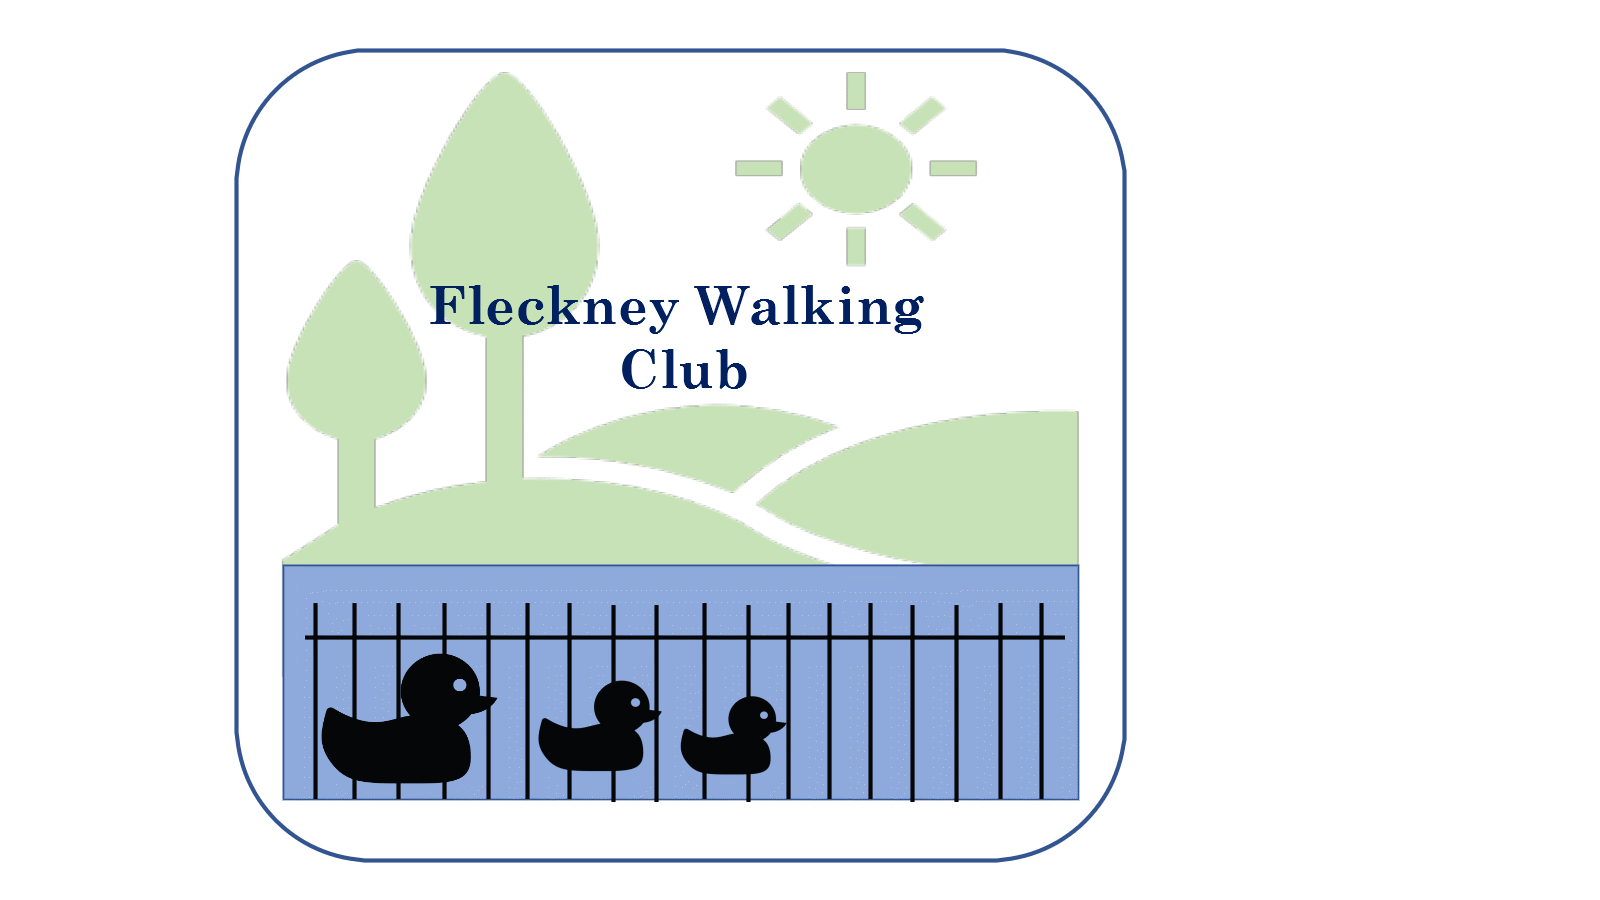 The Fleckney Walking Club